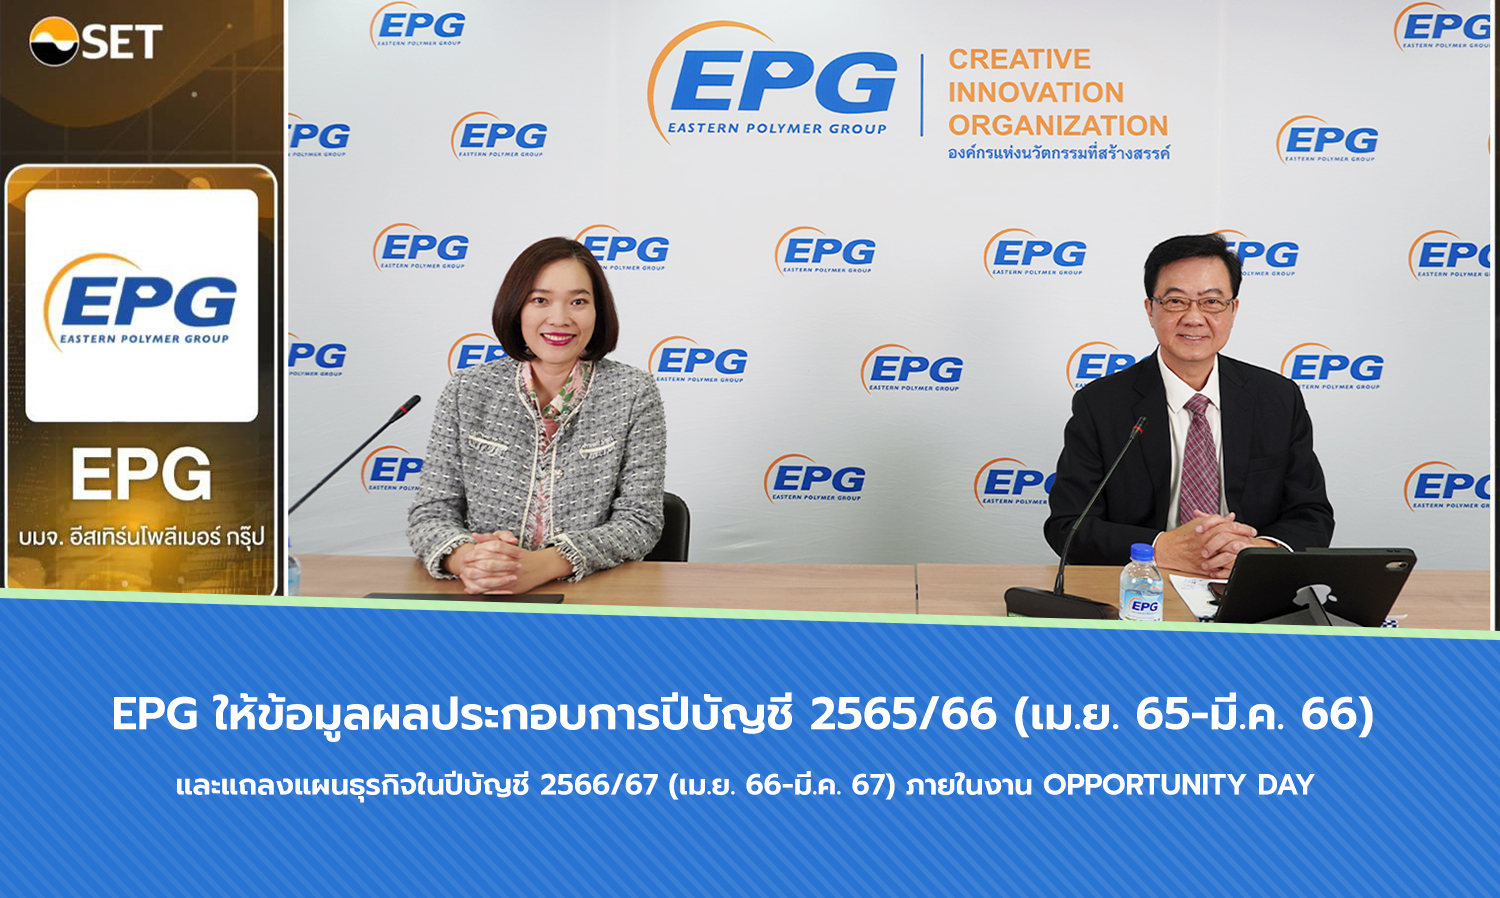 EPG ให้ข้อมูลผลประกอบการปีบัญชี 2565/66 (เม.ย. 65-มี.ค. 66) และแถลงแผนธุรกิจในปีบัญชี 2566/67 (เม.ย. 66-มี.ค. 67) ภายในงาน Opportunity Day